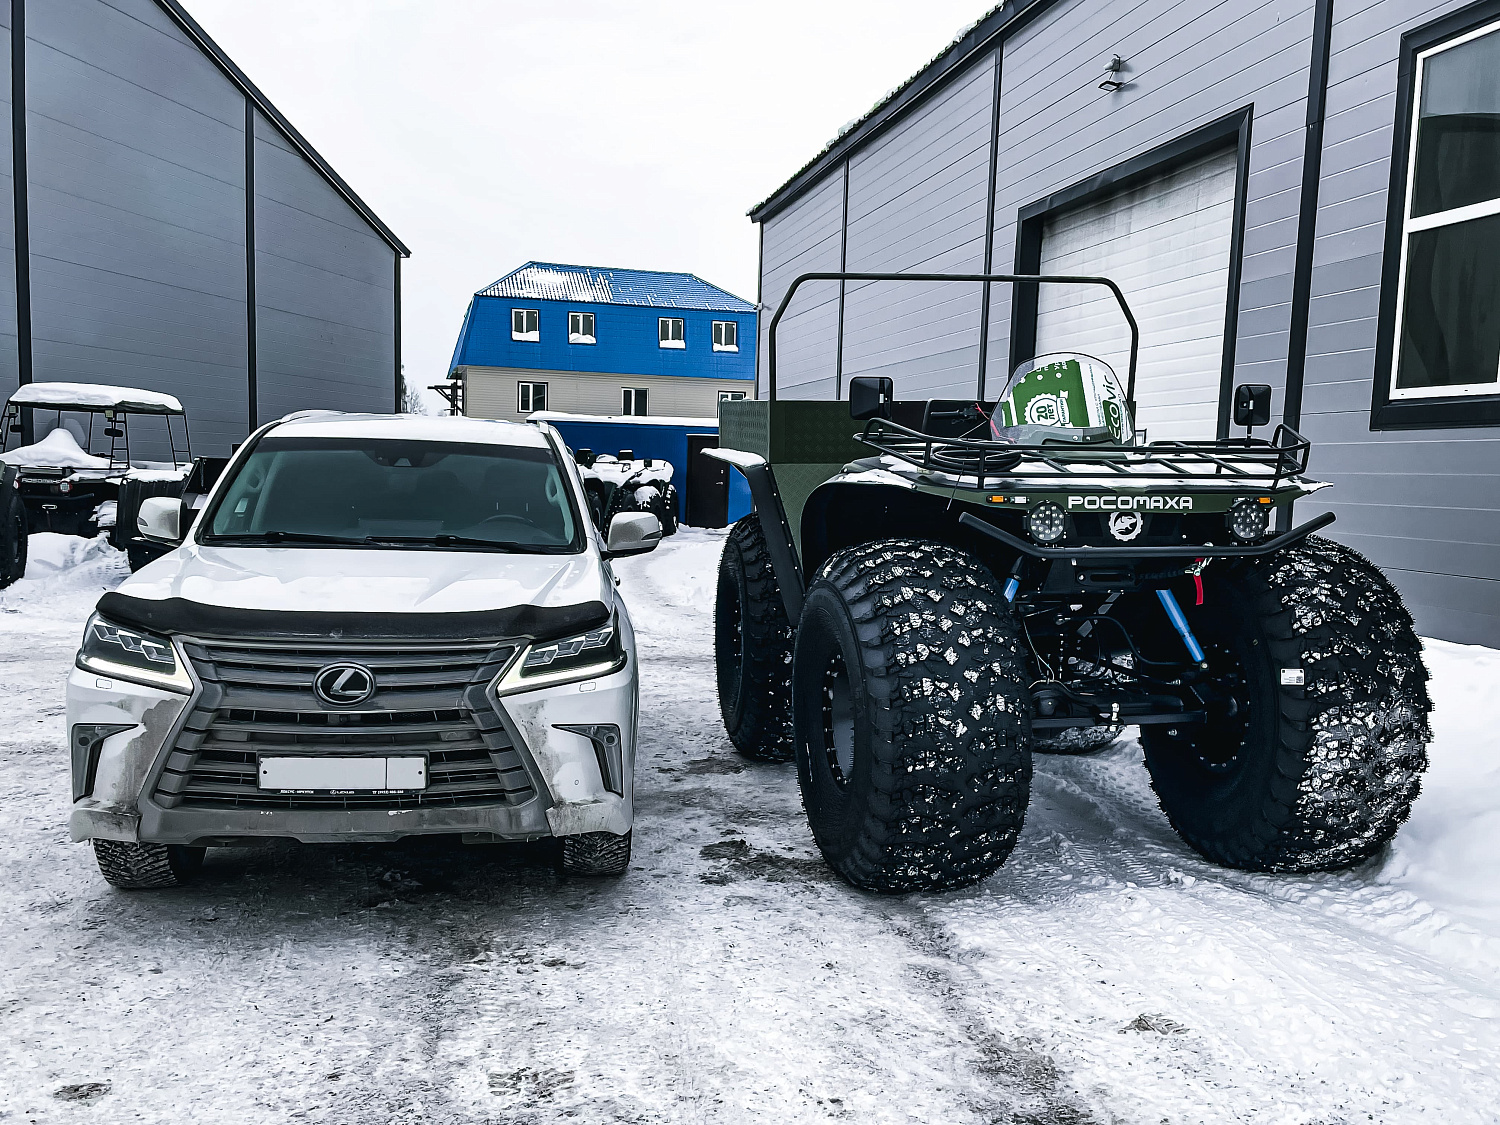 Снегоболотоход "Росомаха" Комплектация (Пикап) с ДВС 1ZZ-FE (1,8 литра с мостами Toyota)